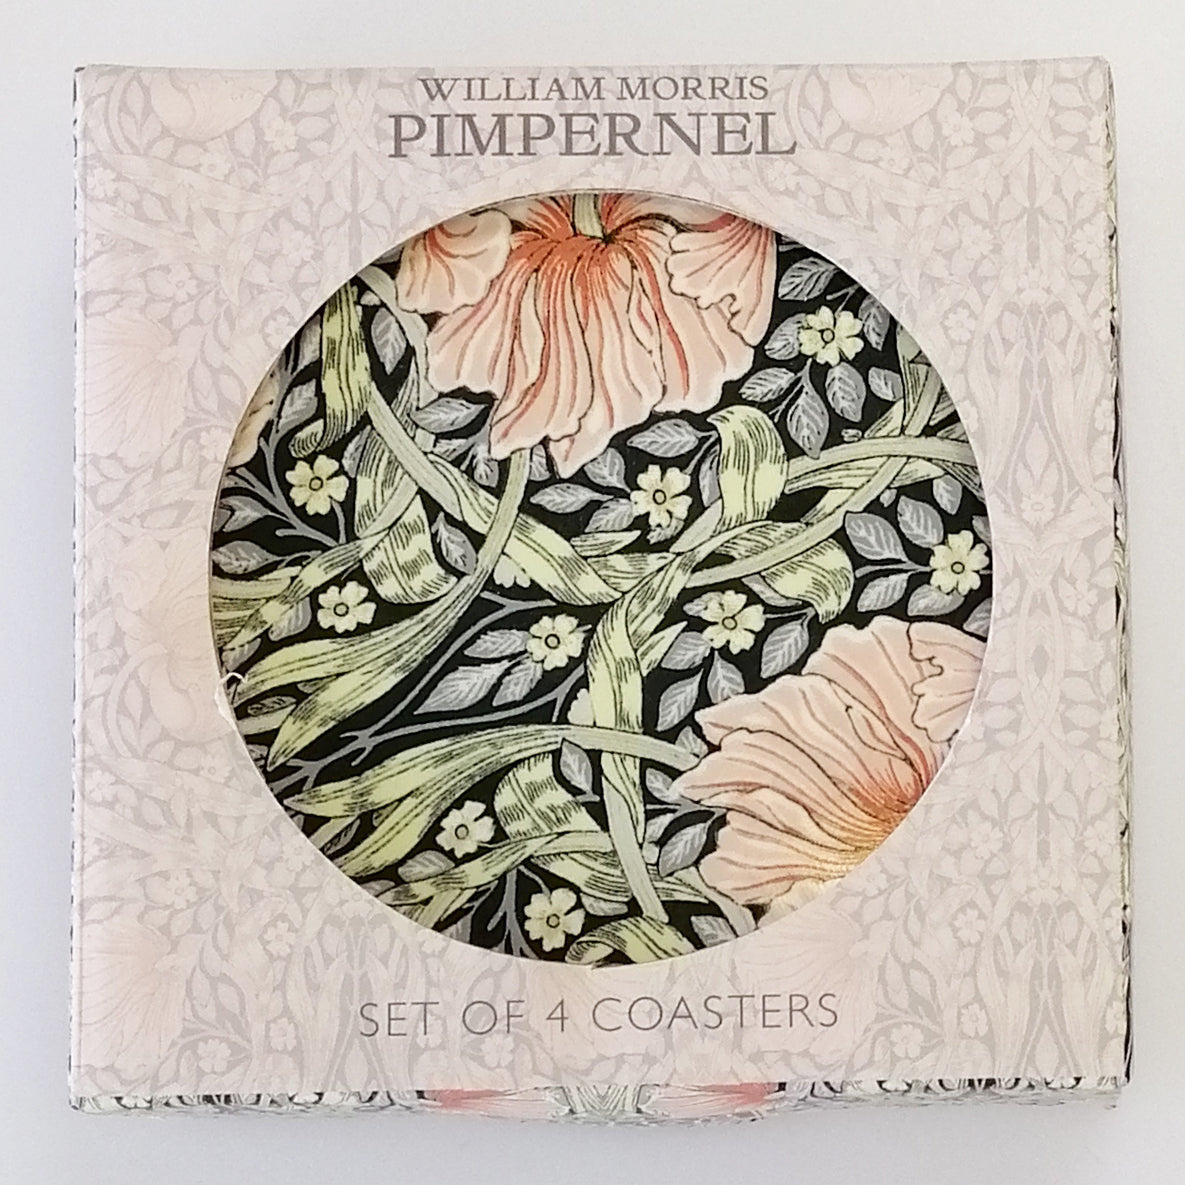 William Morris 'Pimpernel' Coasters - Set of 4